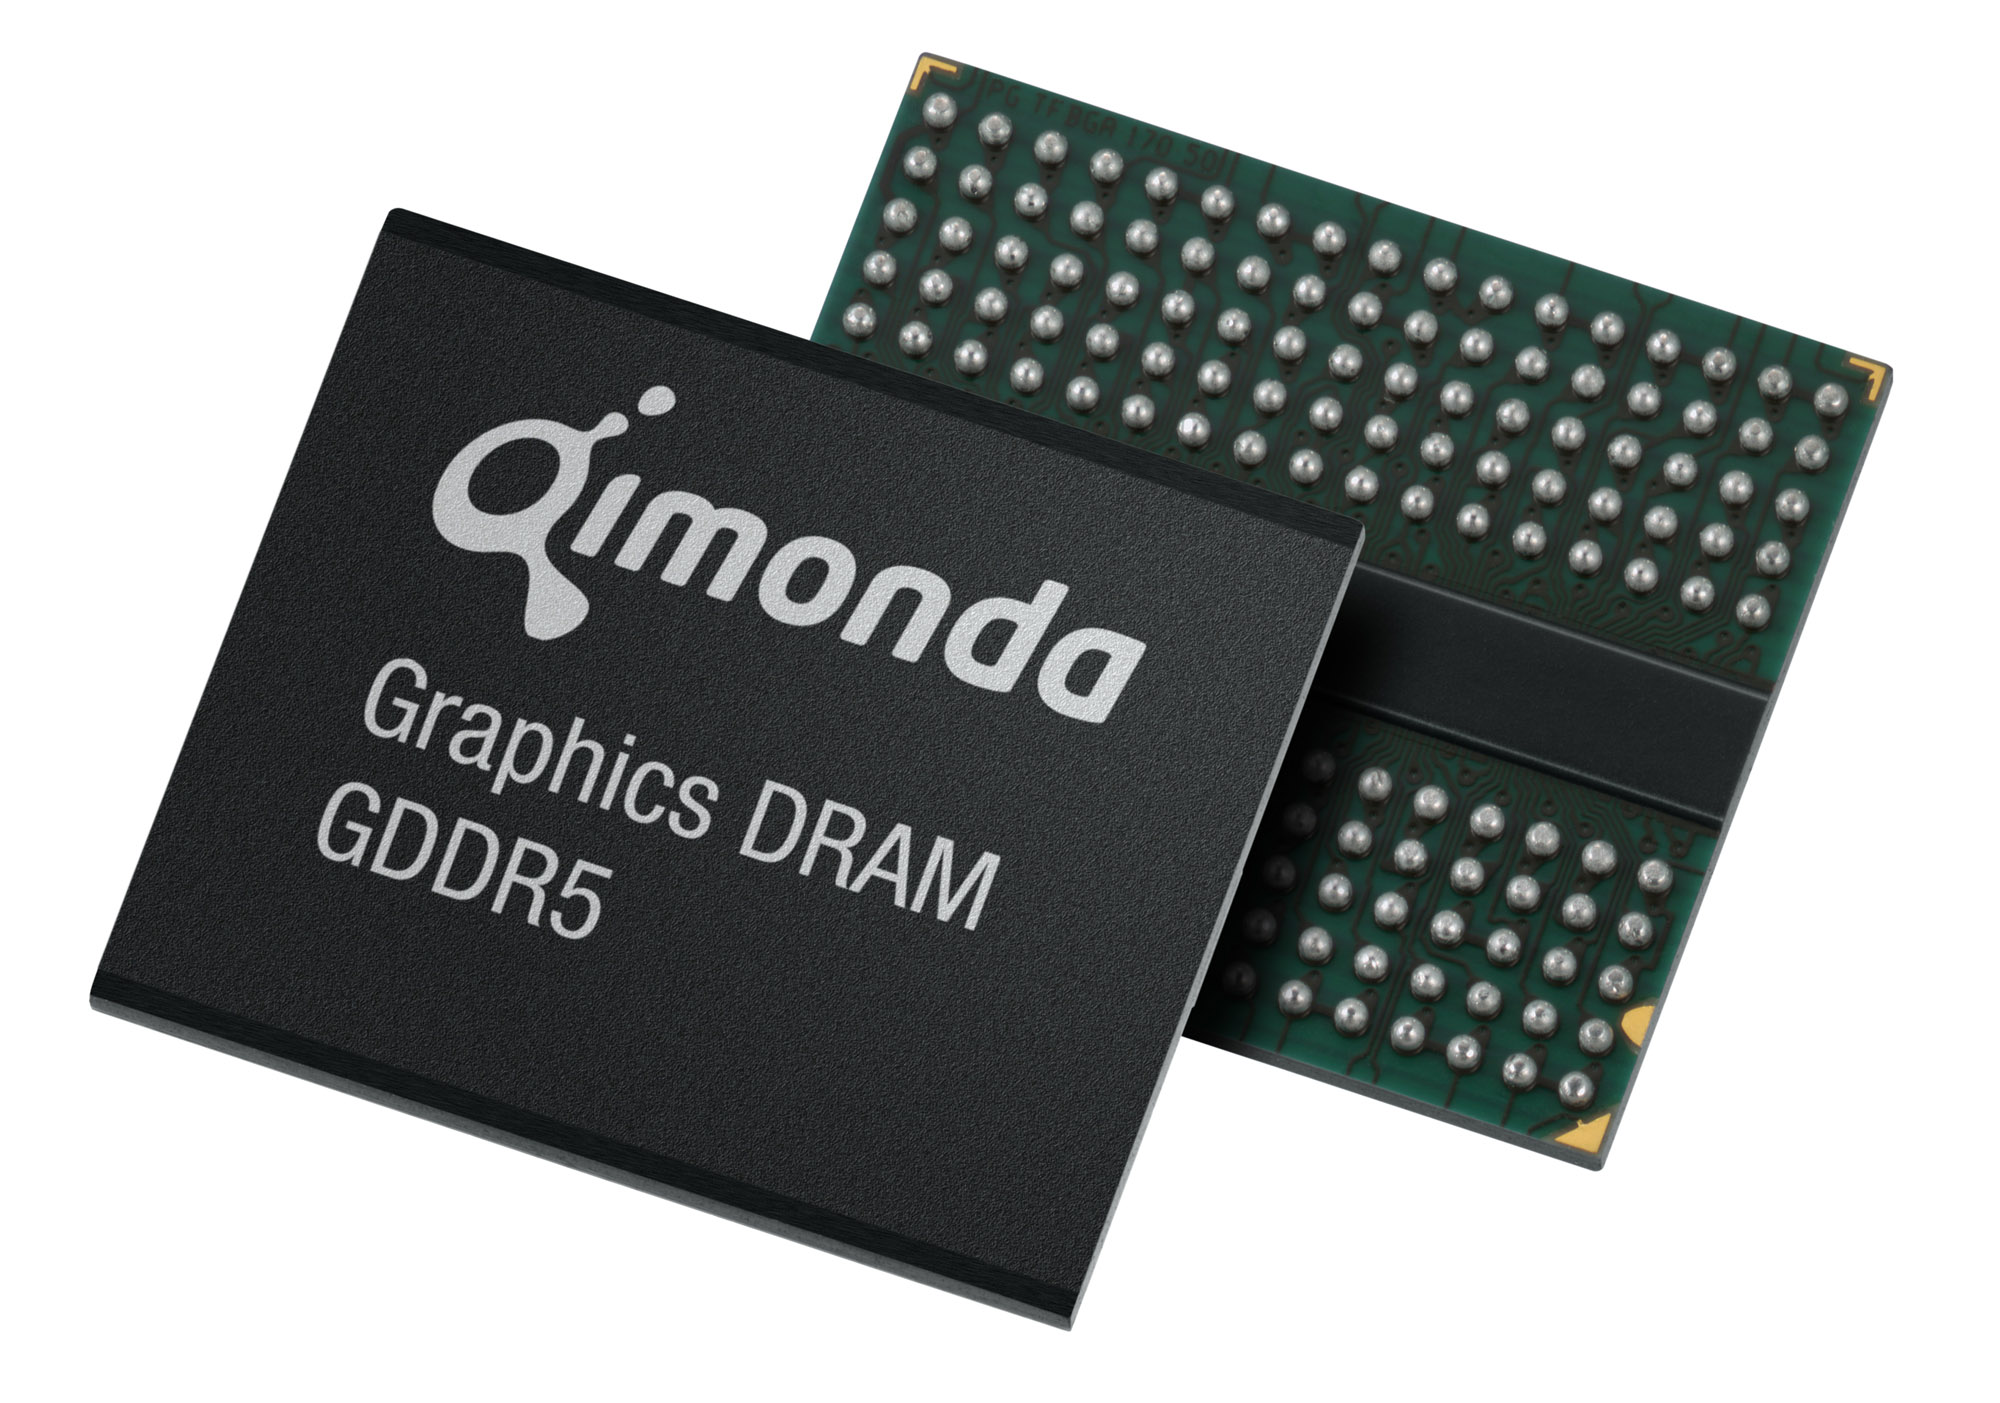 Immagine pubblicata in relazione al seguente contenuto: Qimonda consegna ad AMD i primi chip di RAM G-DDR5 | Nome immagine: news7622_1.jpg